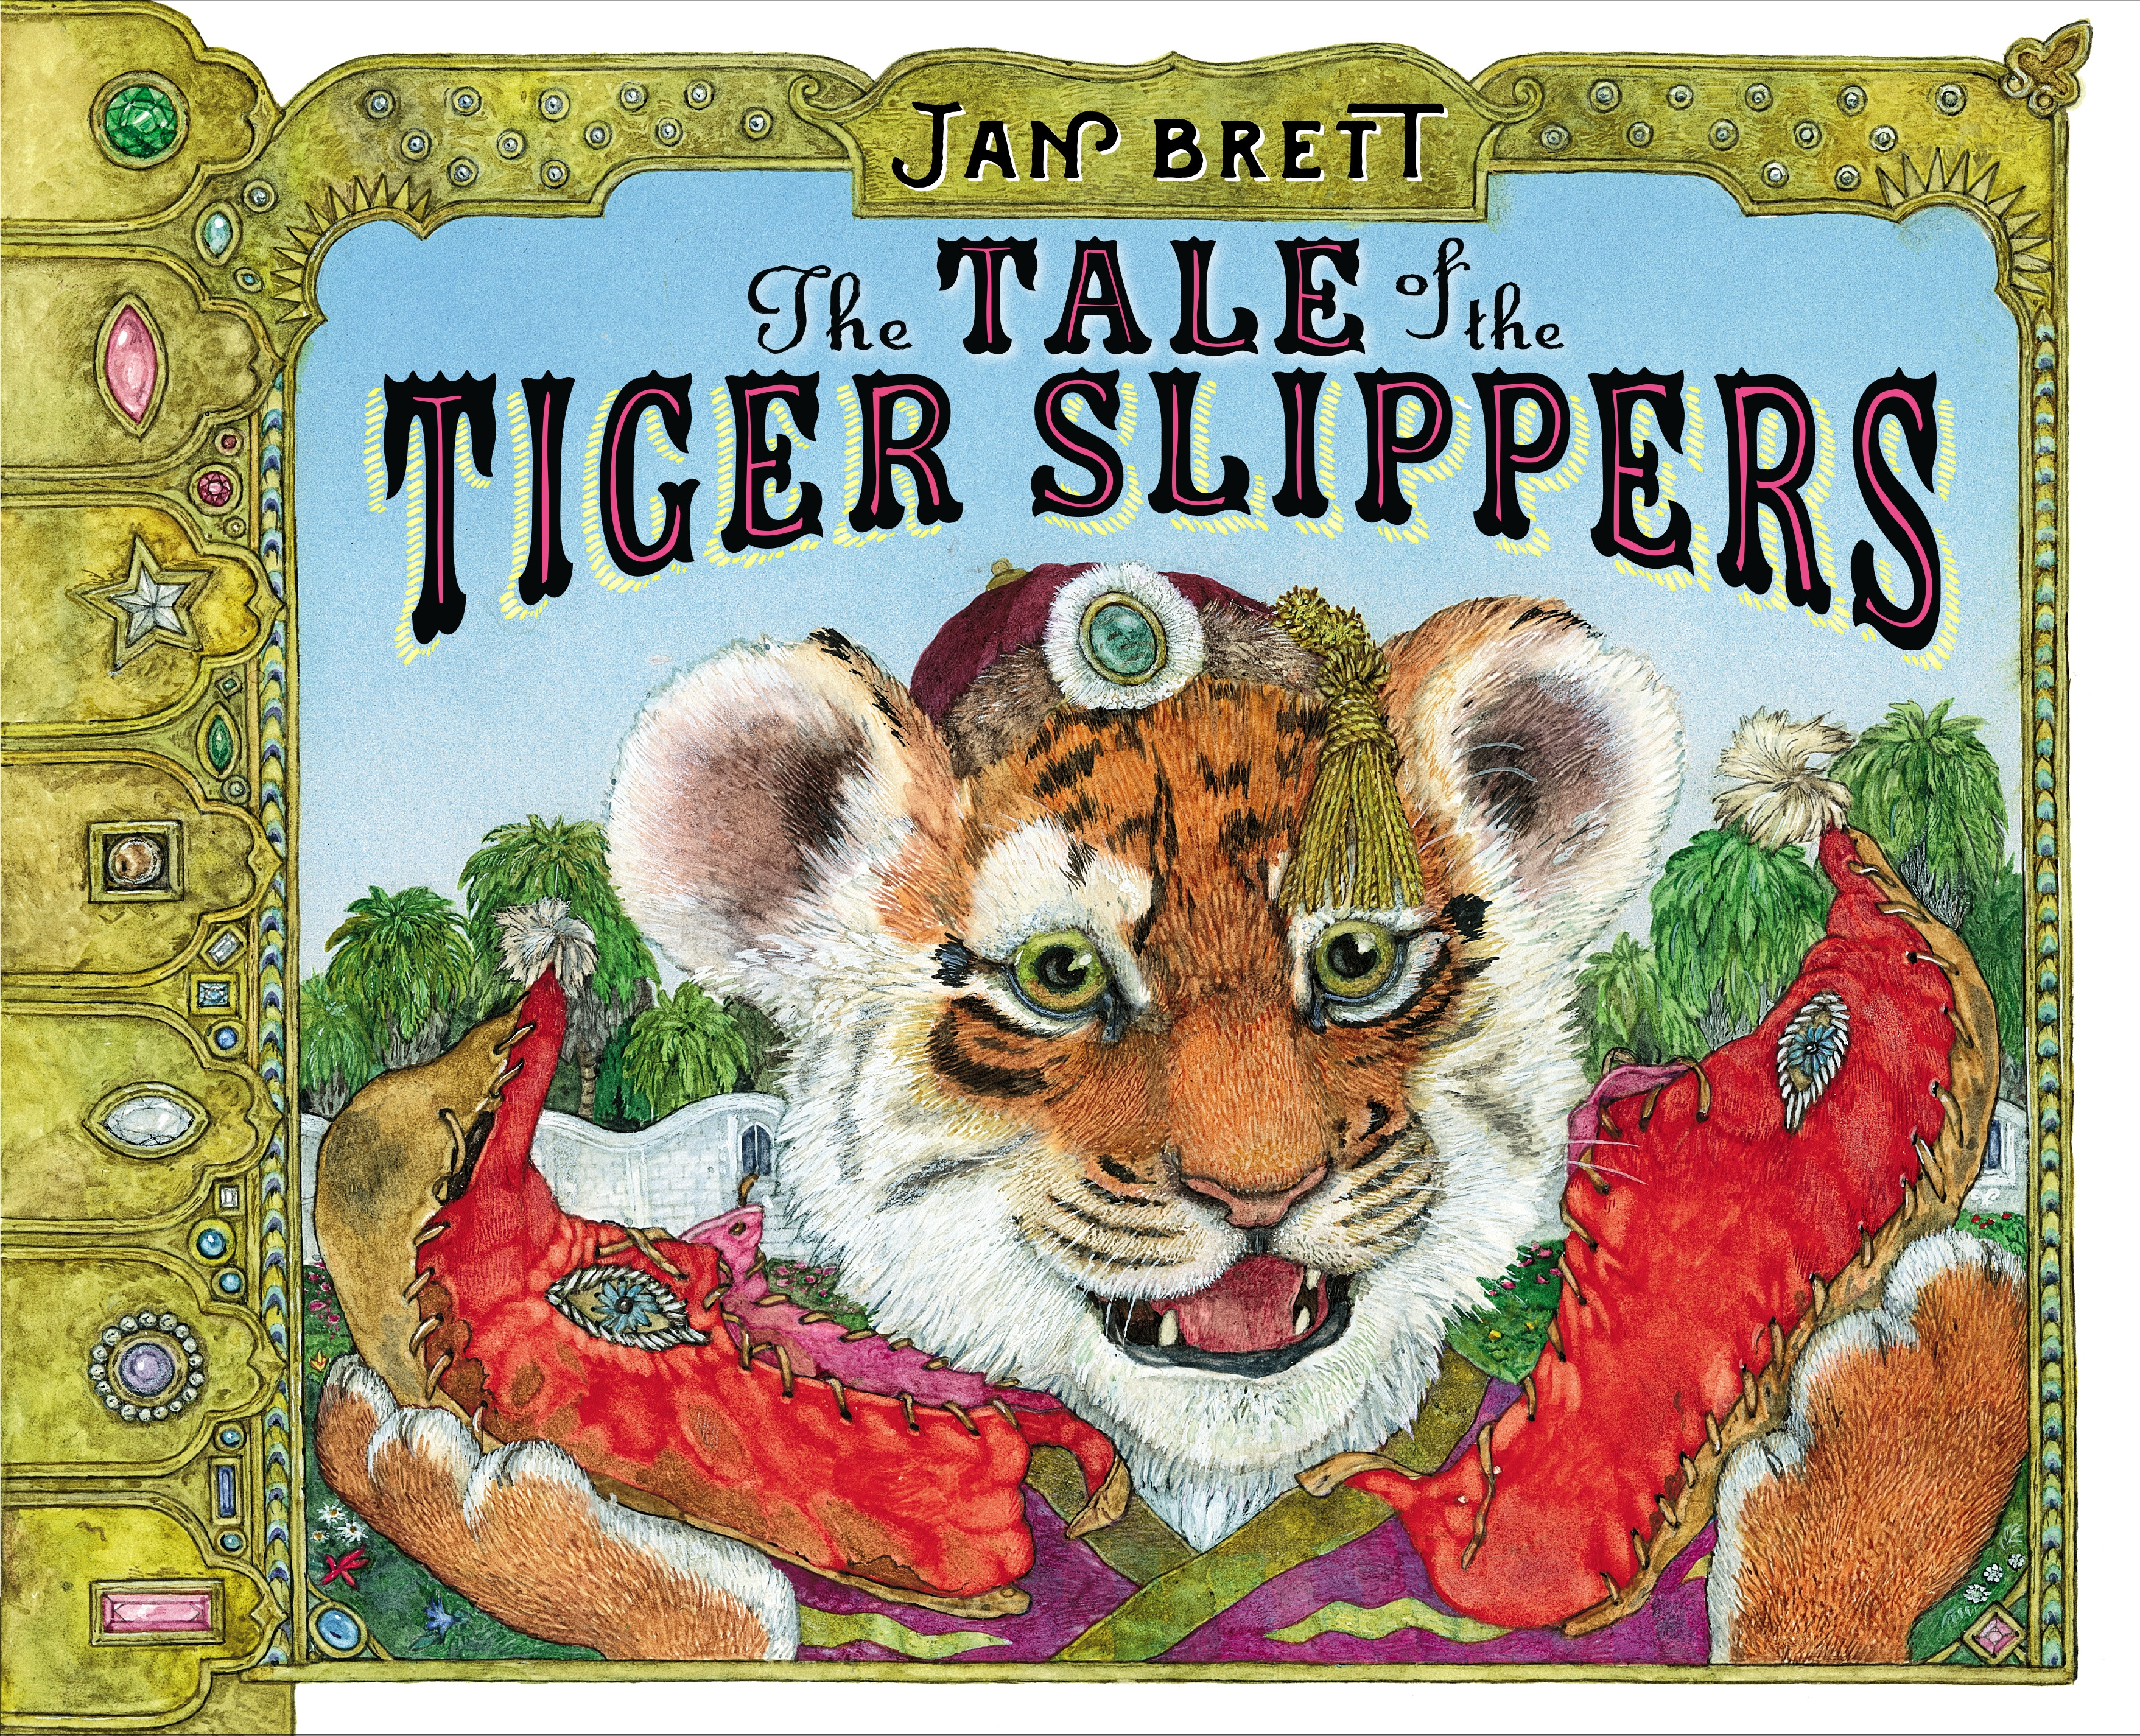 The Tale of the Tiger Slippers by Jan Brett - Penguin Books Australia